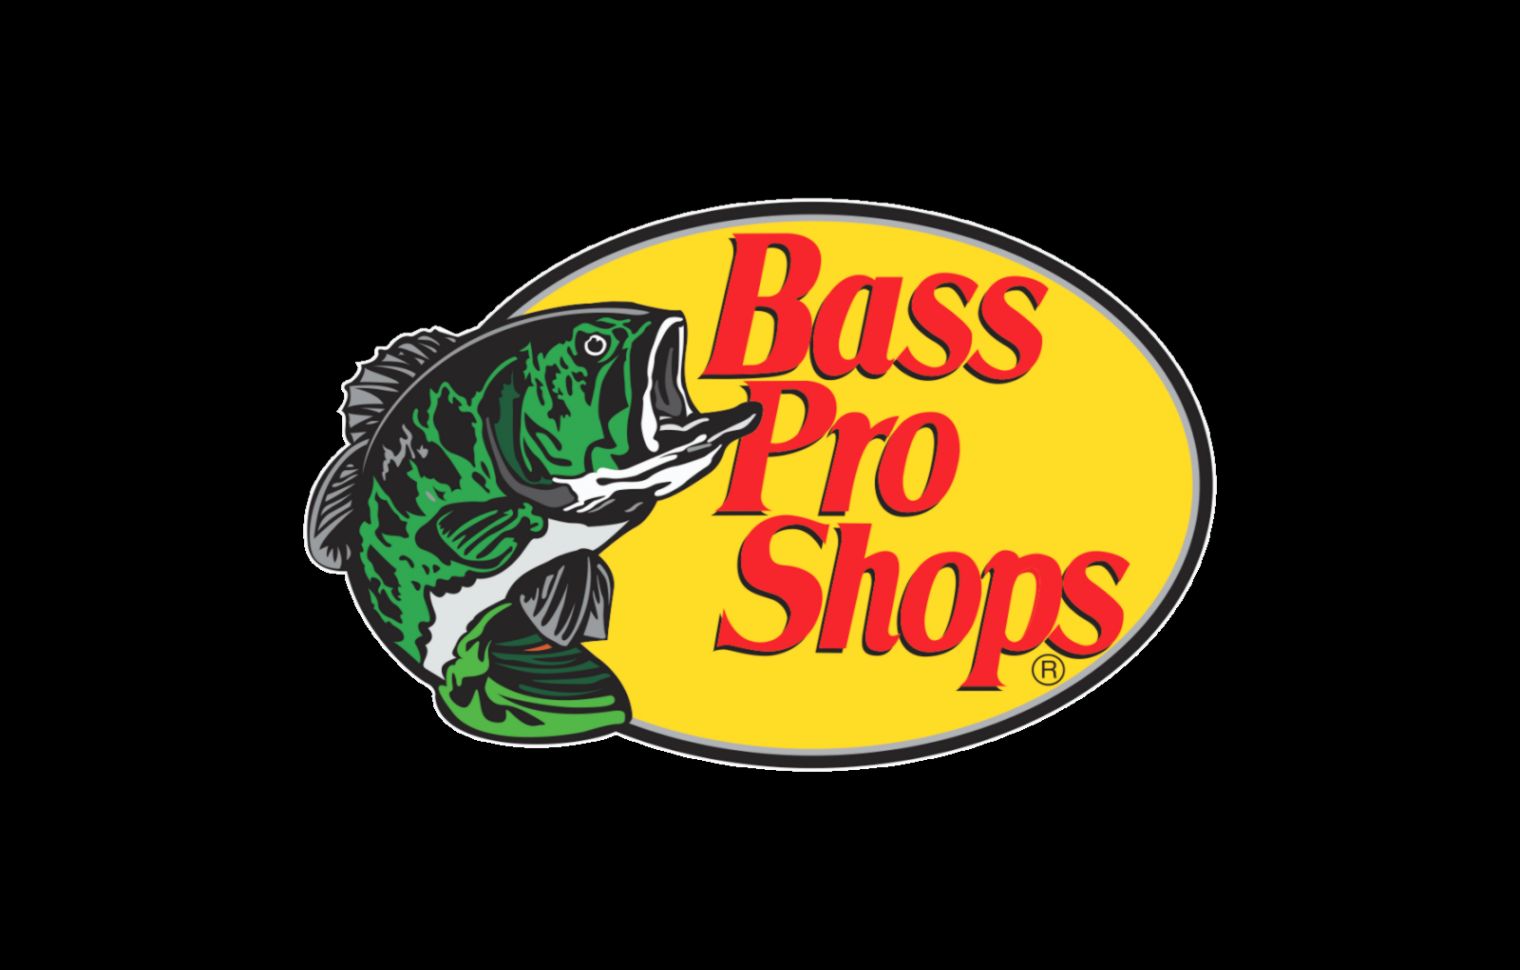 Bass Pro shops. Bass Pro басс. Логотип Bass рыбалка. Bass Pro shops футболка. Сказки басс